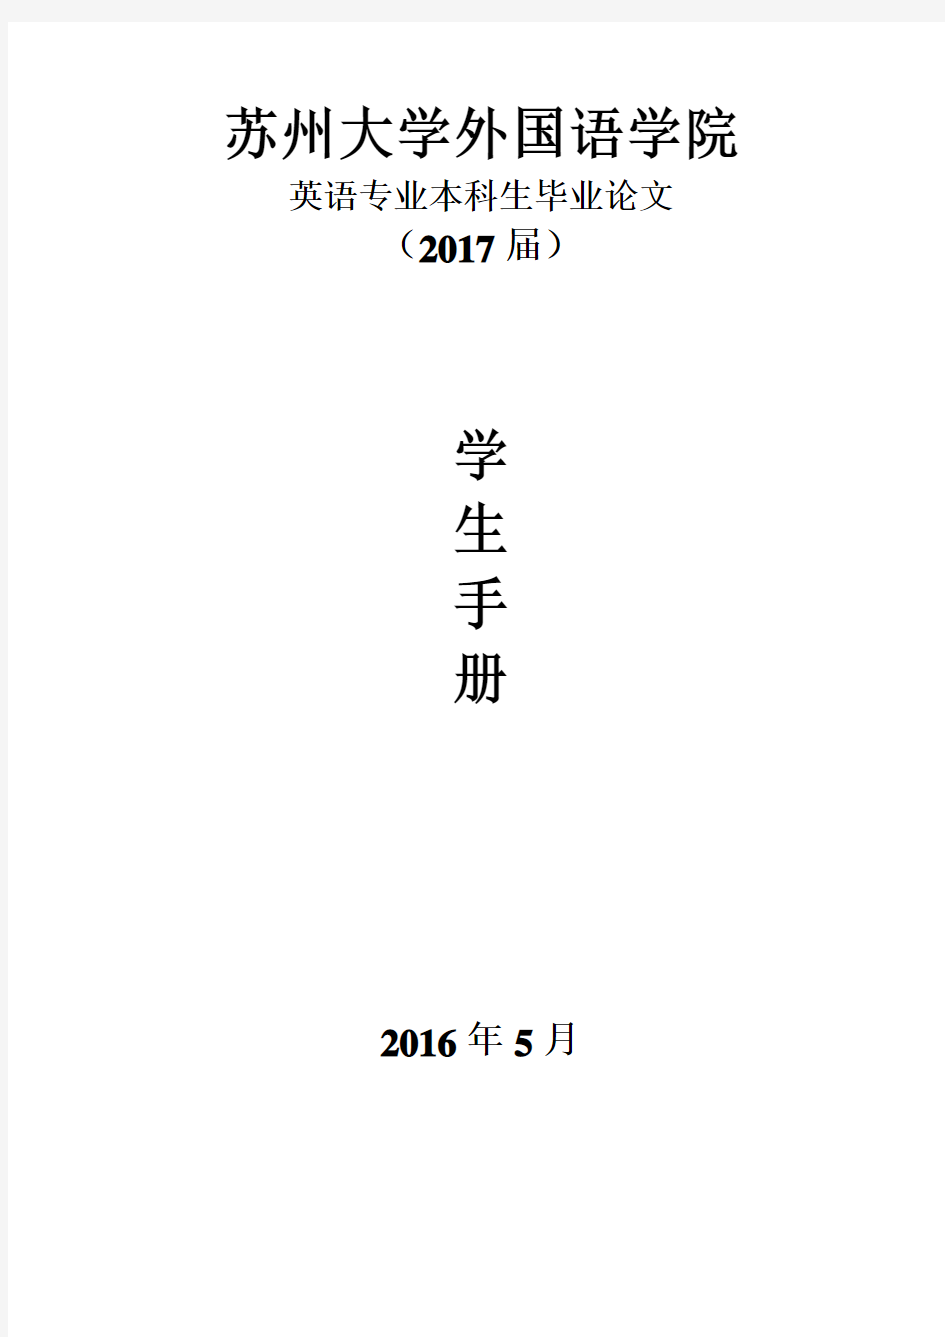 2017届学生手册电子版(201605)